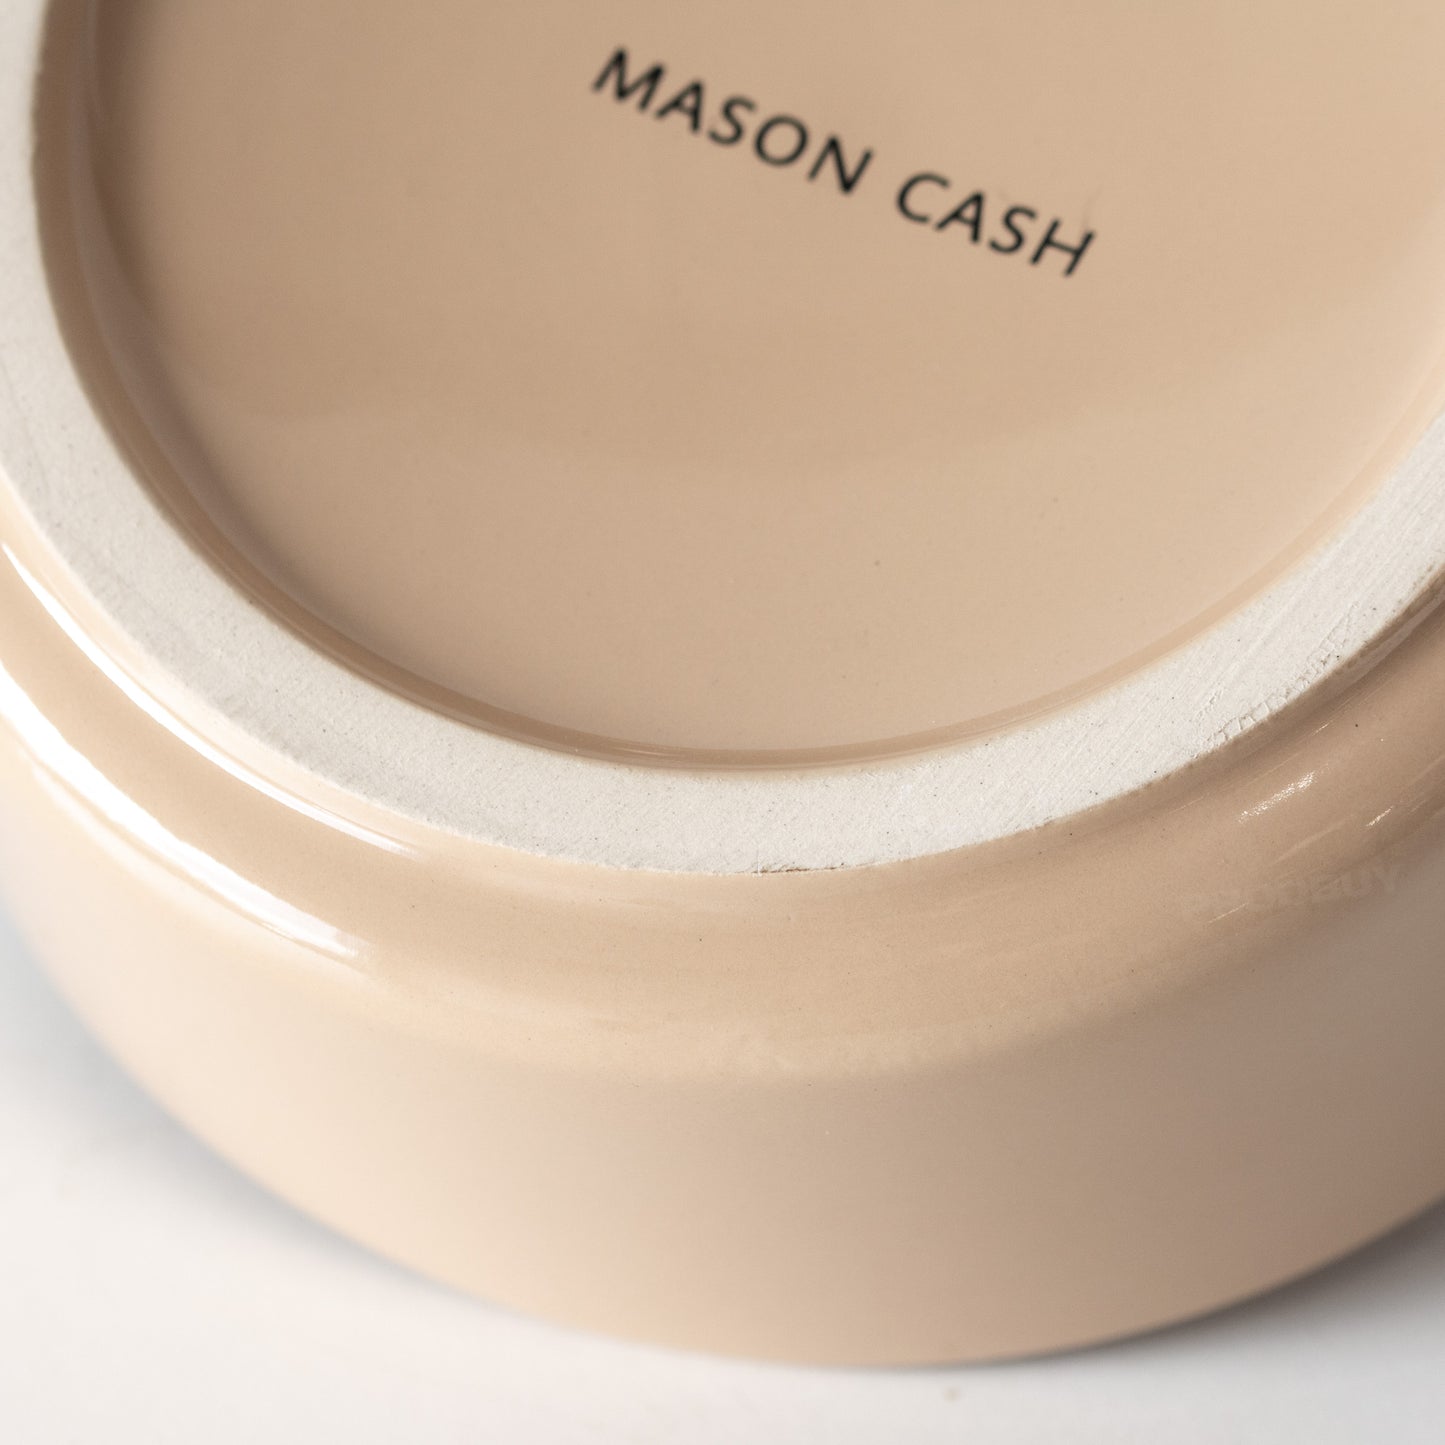 Mason Cash Cane Pet Food Bowl 15cm